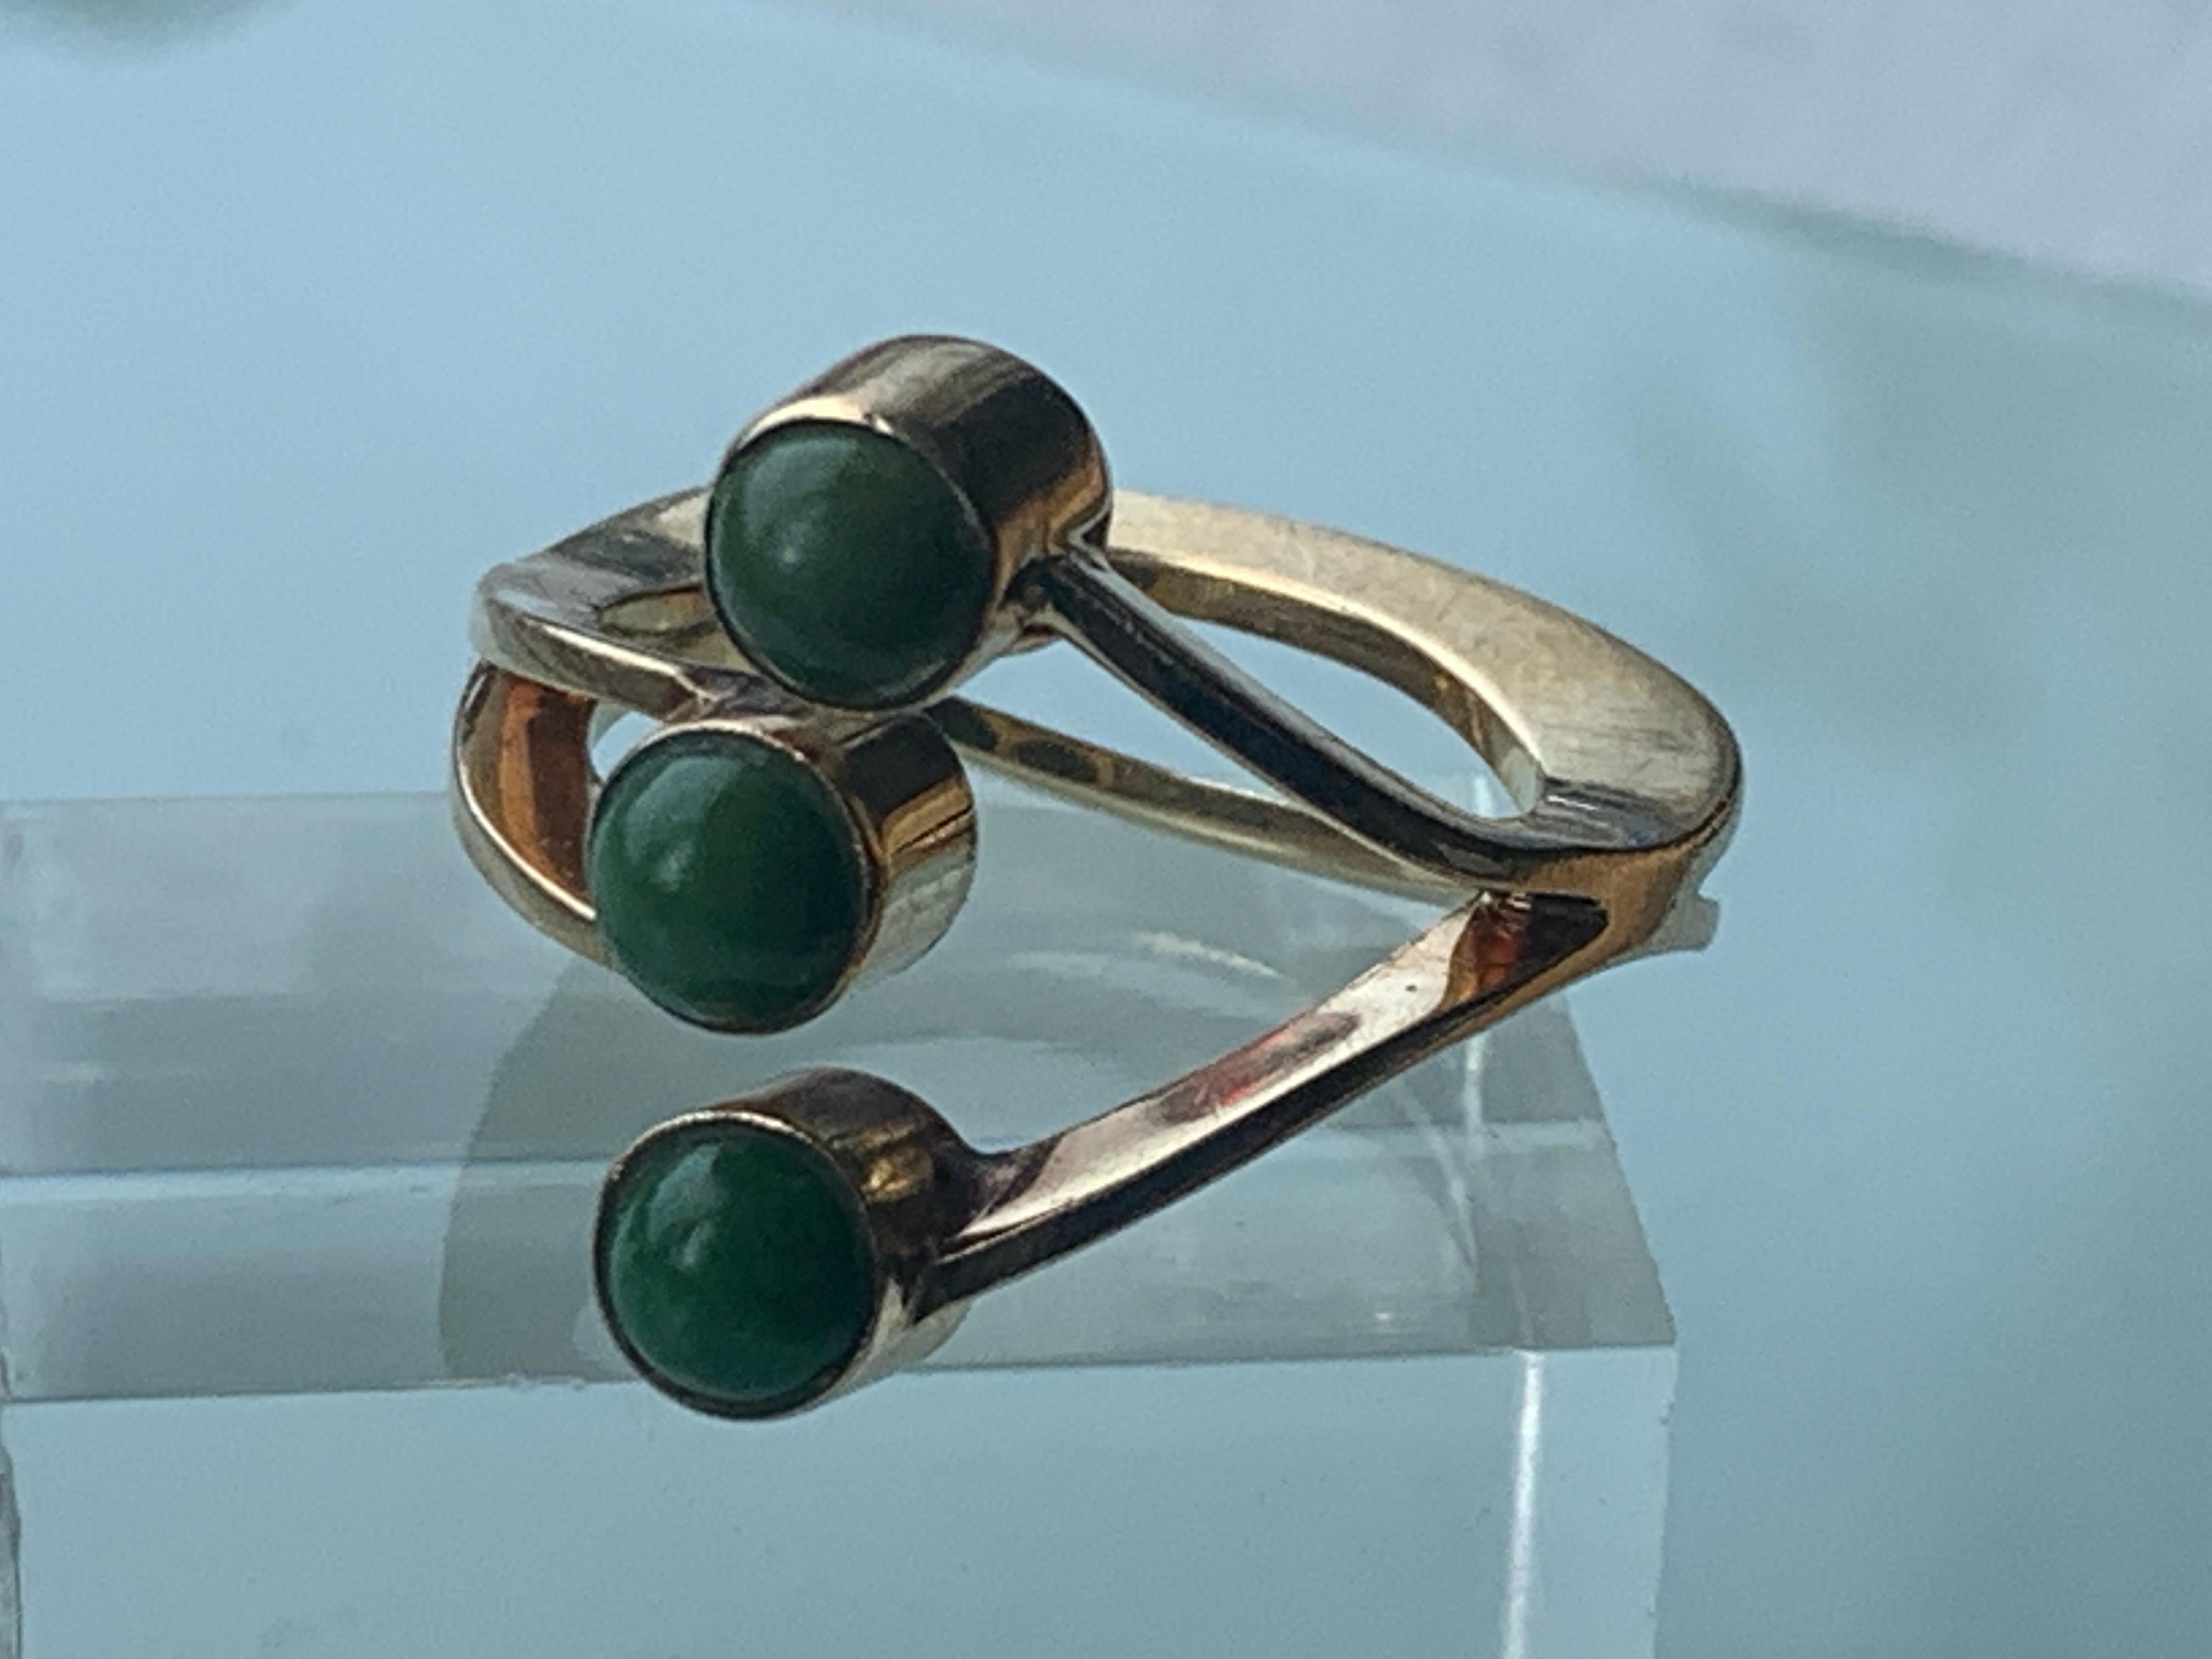 14ct Gold Danish Designer Ring 
By Jorgen Larsen
Stamped JOL 14k
Atomic Design 
unknown green gems